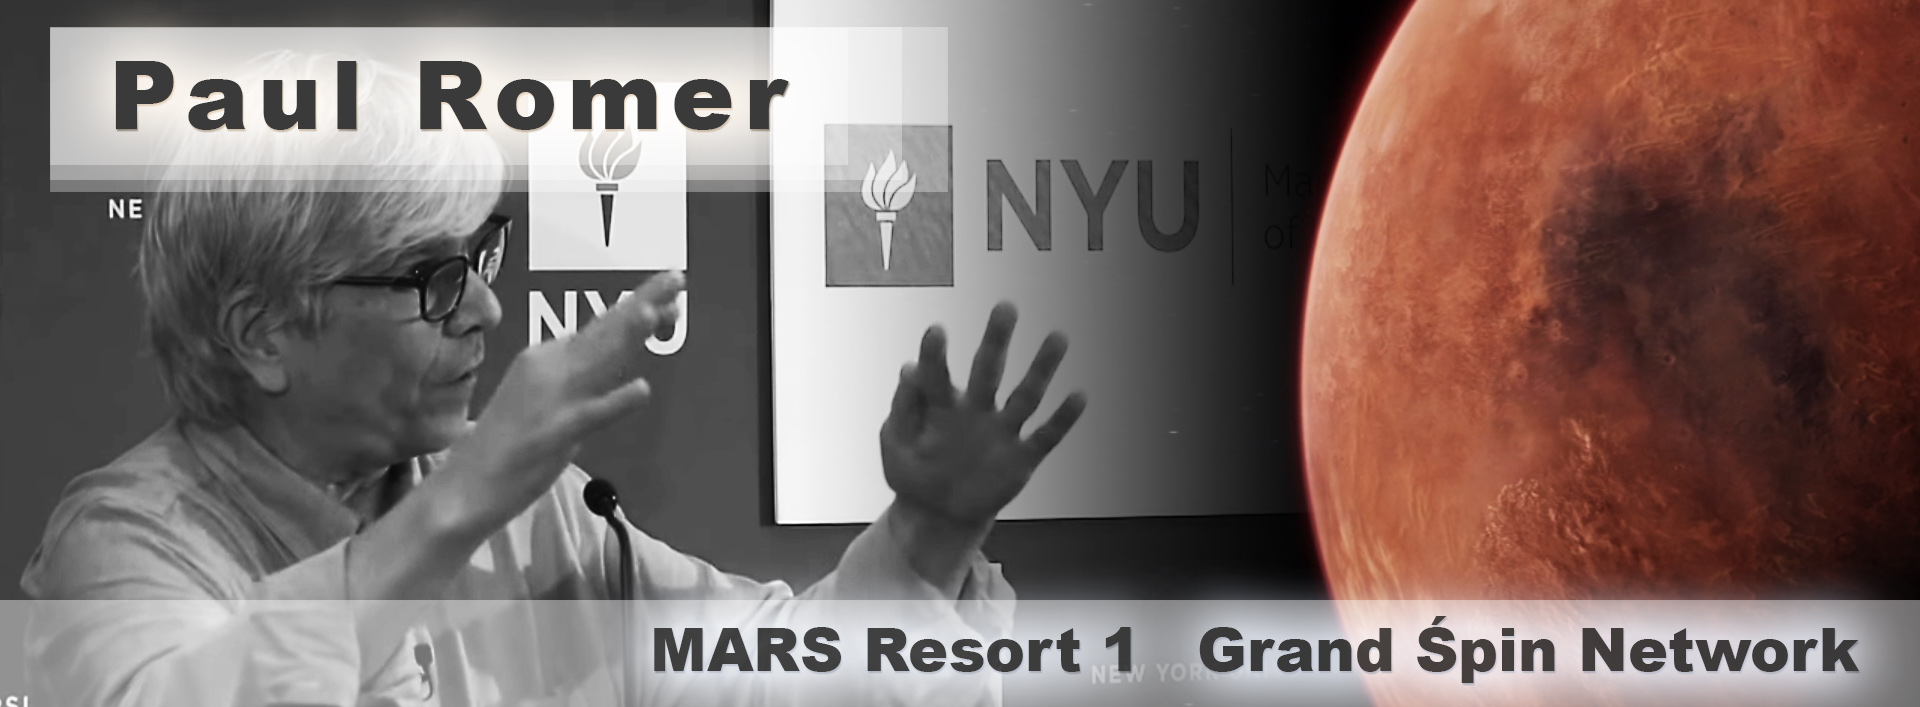 Paul-Romer__NYU__MARS-RESORT-1__Grand-Śpin-Network__B&W